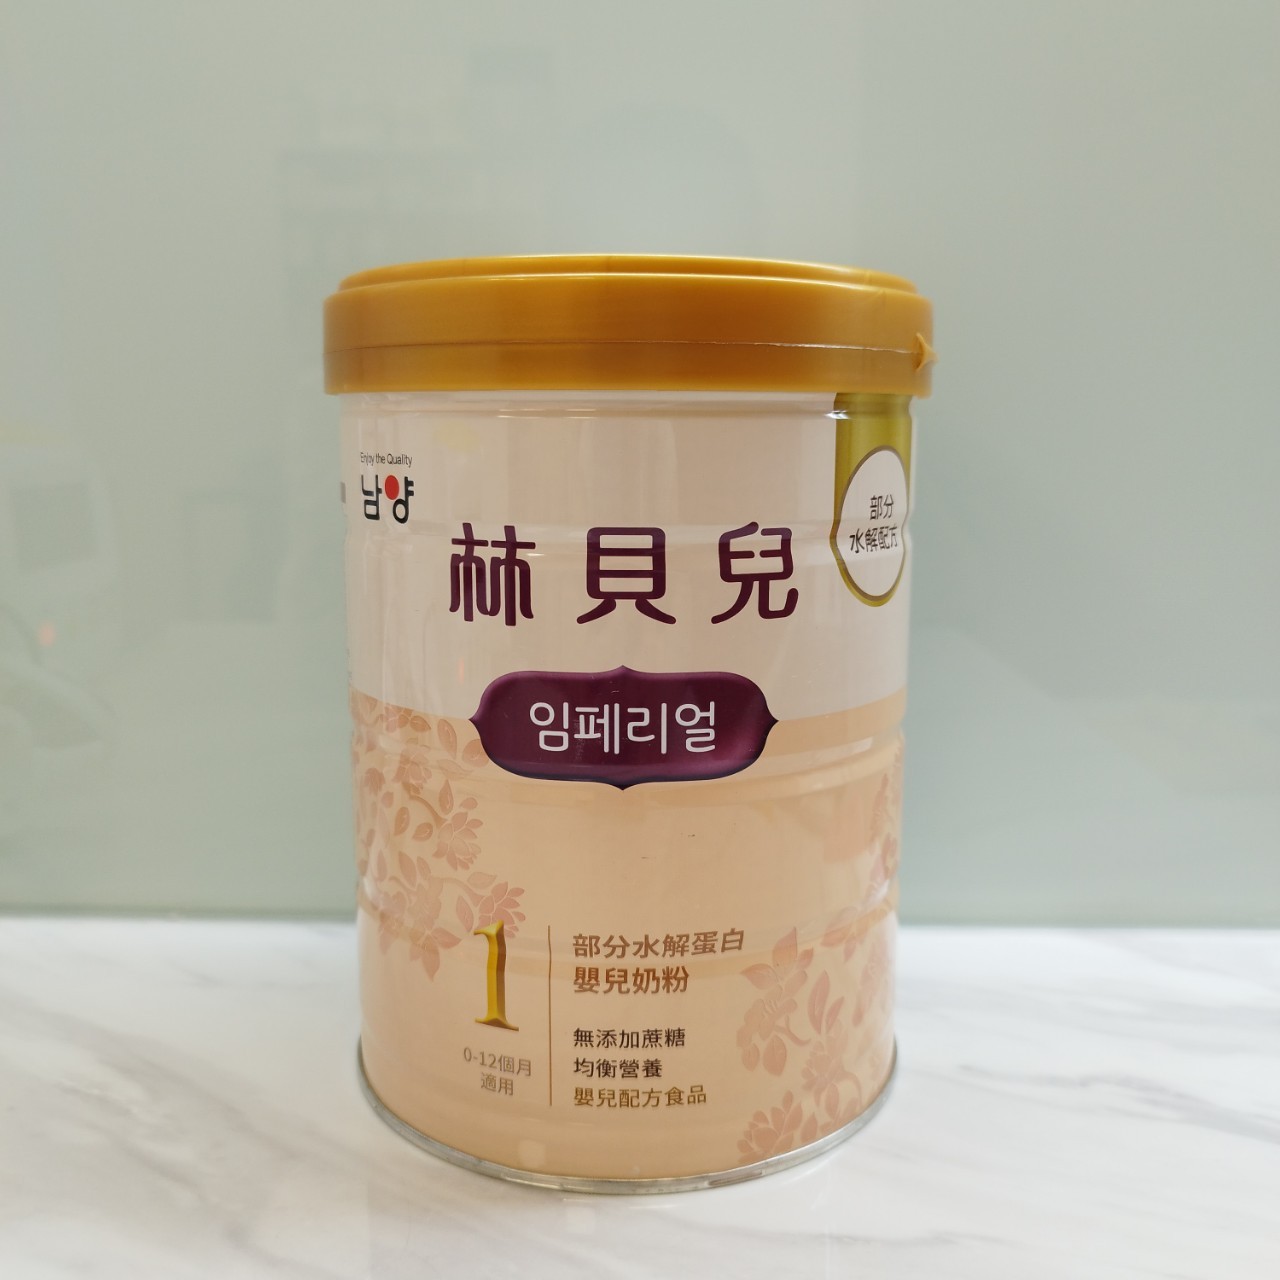 南陽 林貝兒 1號 部分水解蛋白嬰兒配方奶粉 800g (0-12個月適用)